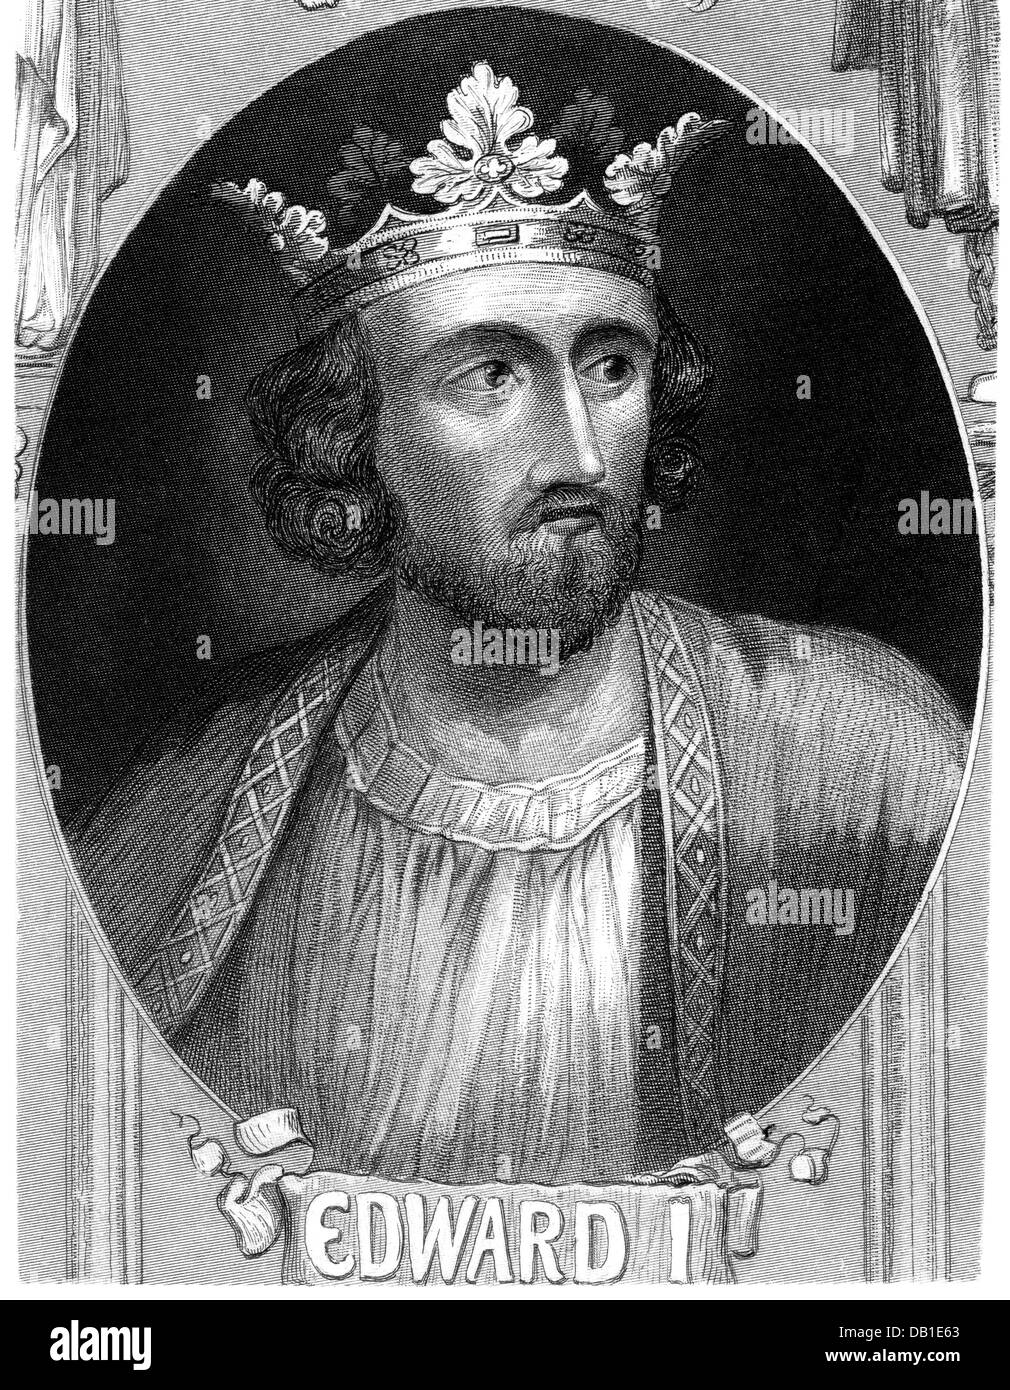 Edward Longshanks 'je', 17.6.1239 - 7.7.1307, roi d'Angleterre 20.11.1272 - 7.7.1307, portrait, gravure sur acier, 19e siècle, l'artiste n'a pas d'auteur pour être effacé Banque D'Images